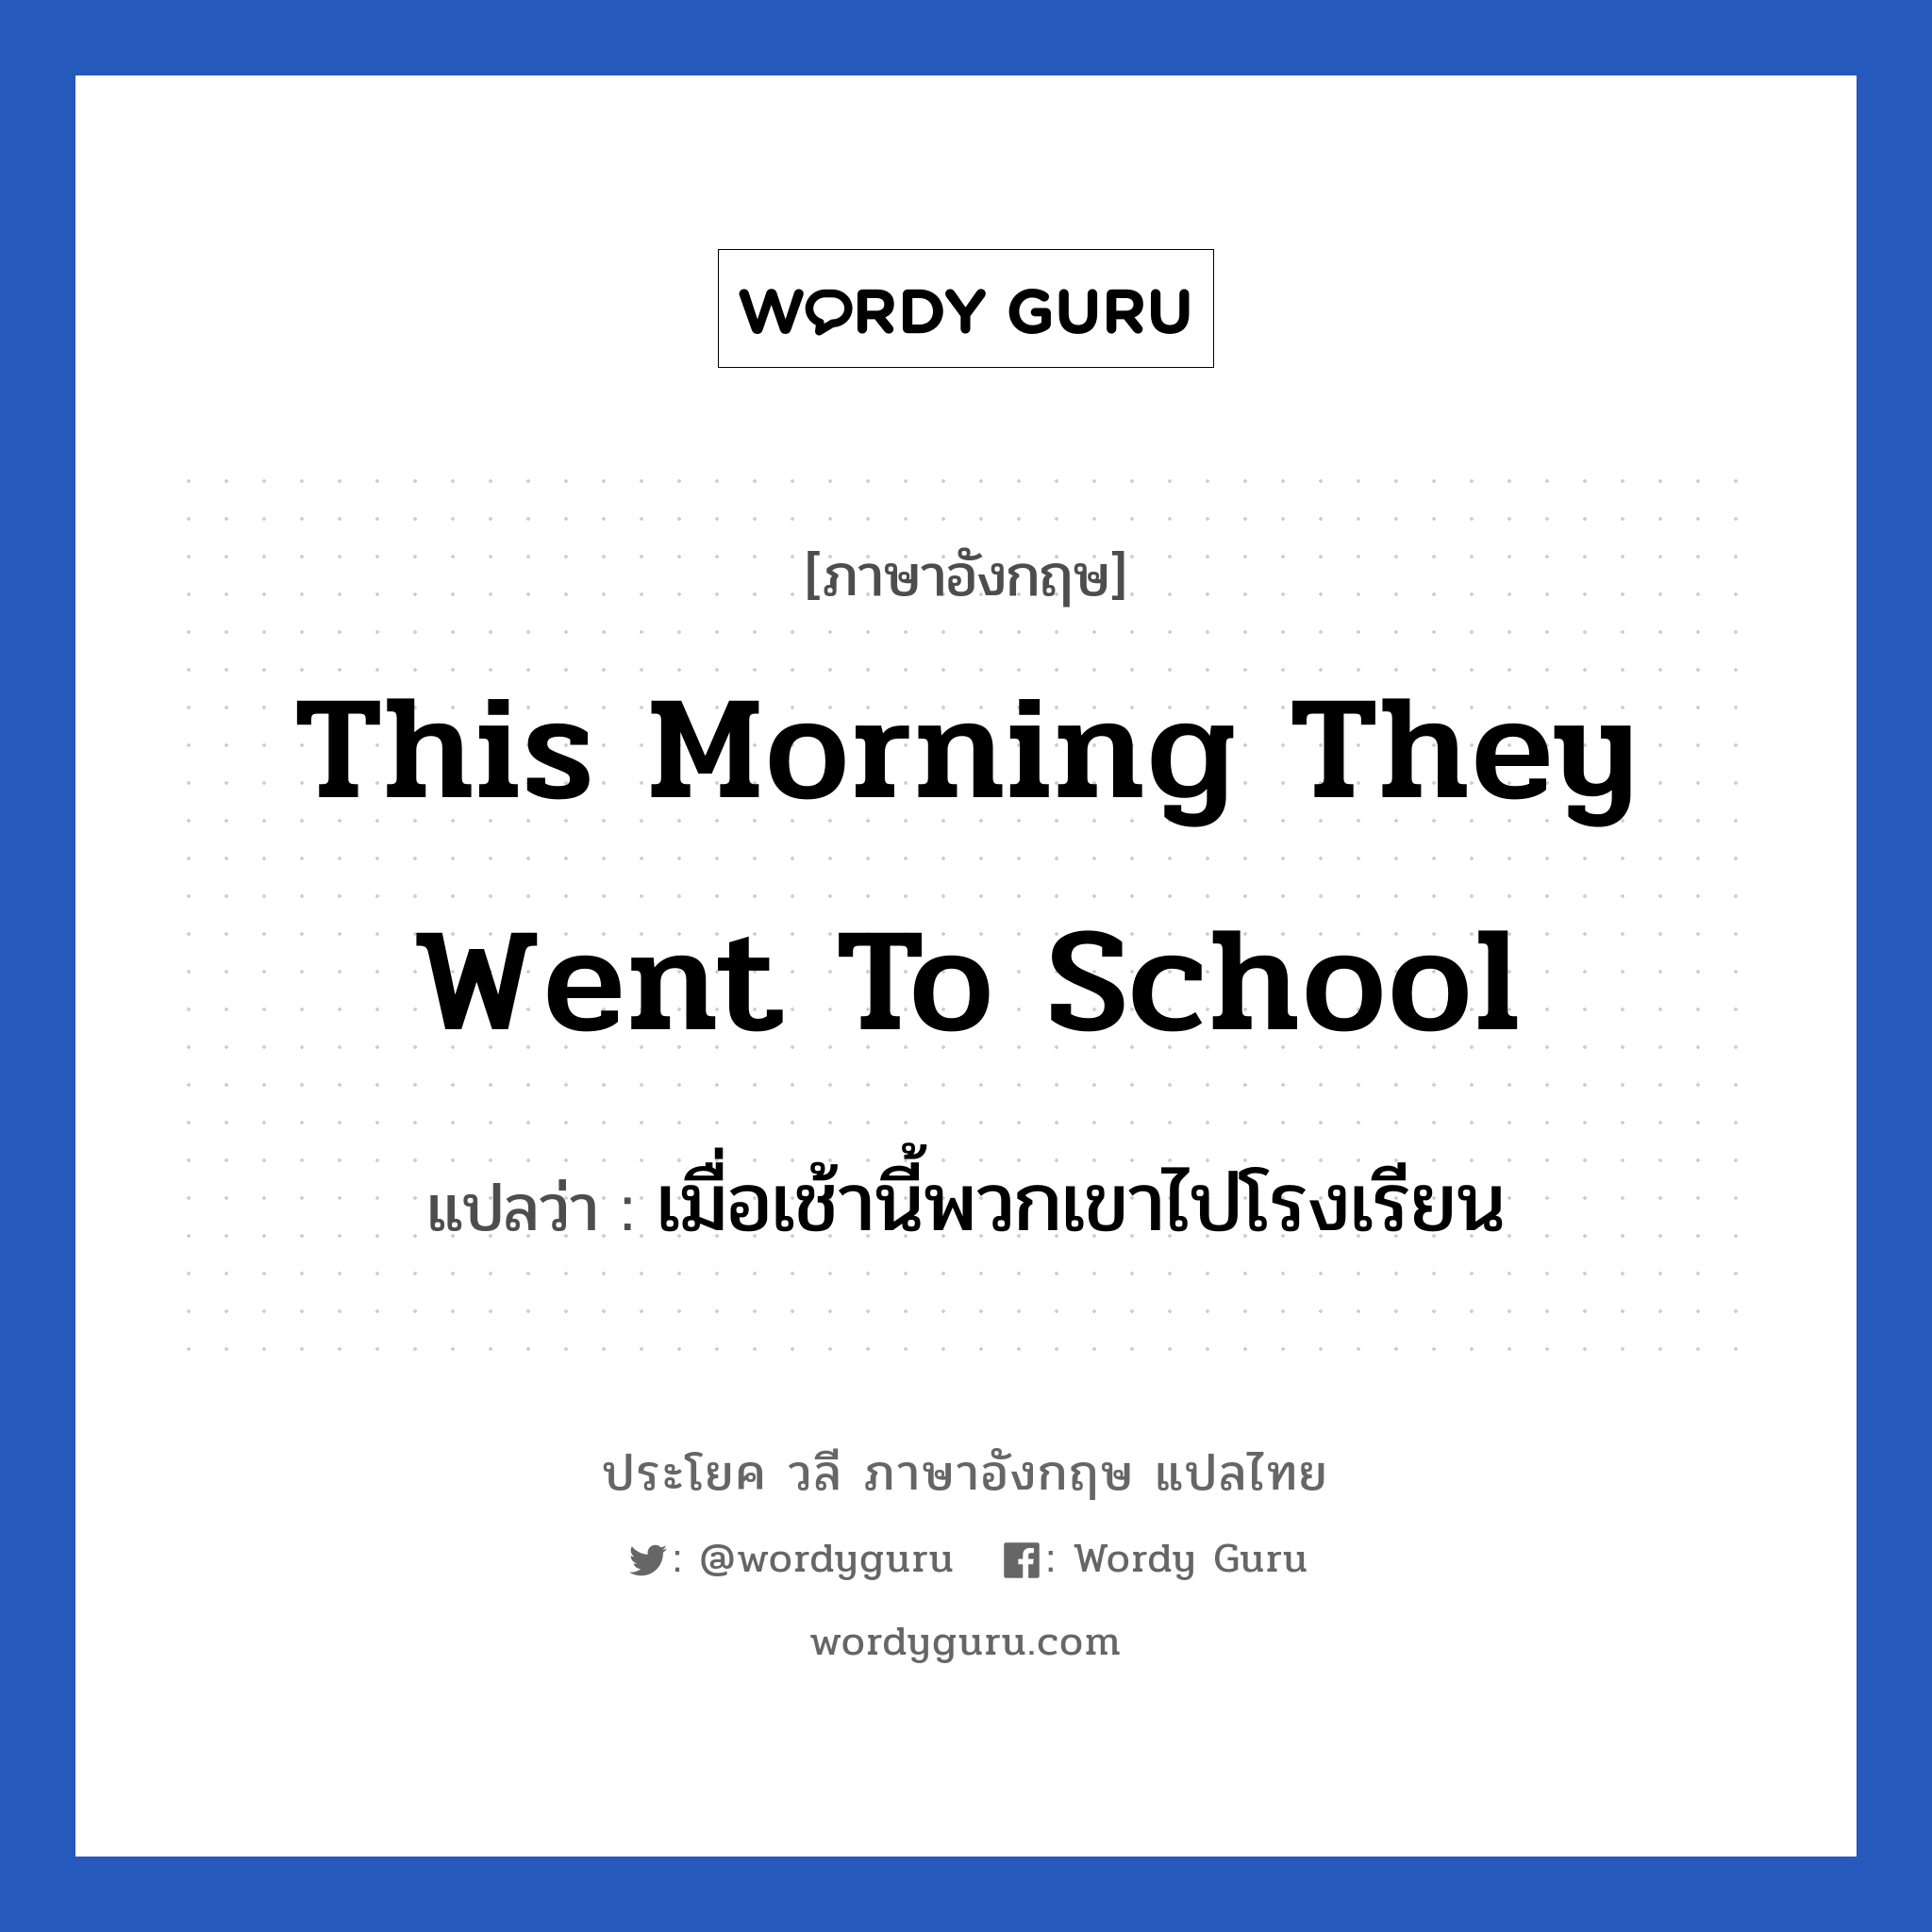 เมื่อเช้านี้พวกเขาไปโรงเรียน ภาษาอังกฤษ?, วลีภาษาอังกฤษ เมื่อเช้านี้พวกเขาไปโรงเรียน แปลว่า This morning they went to school หมวด ในห้องเรียน